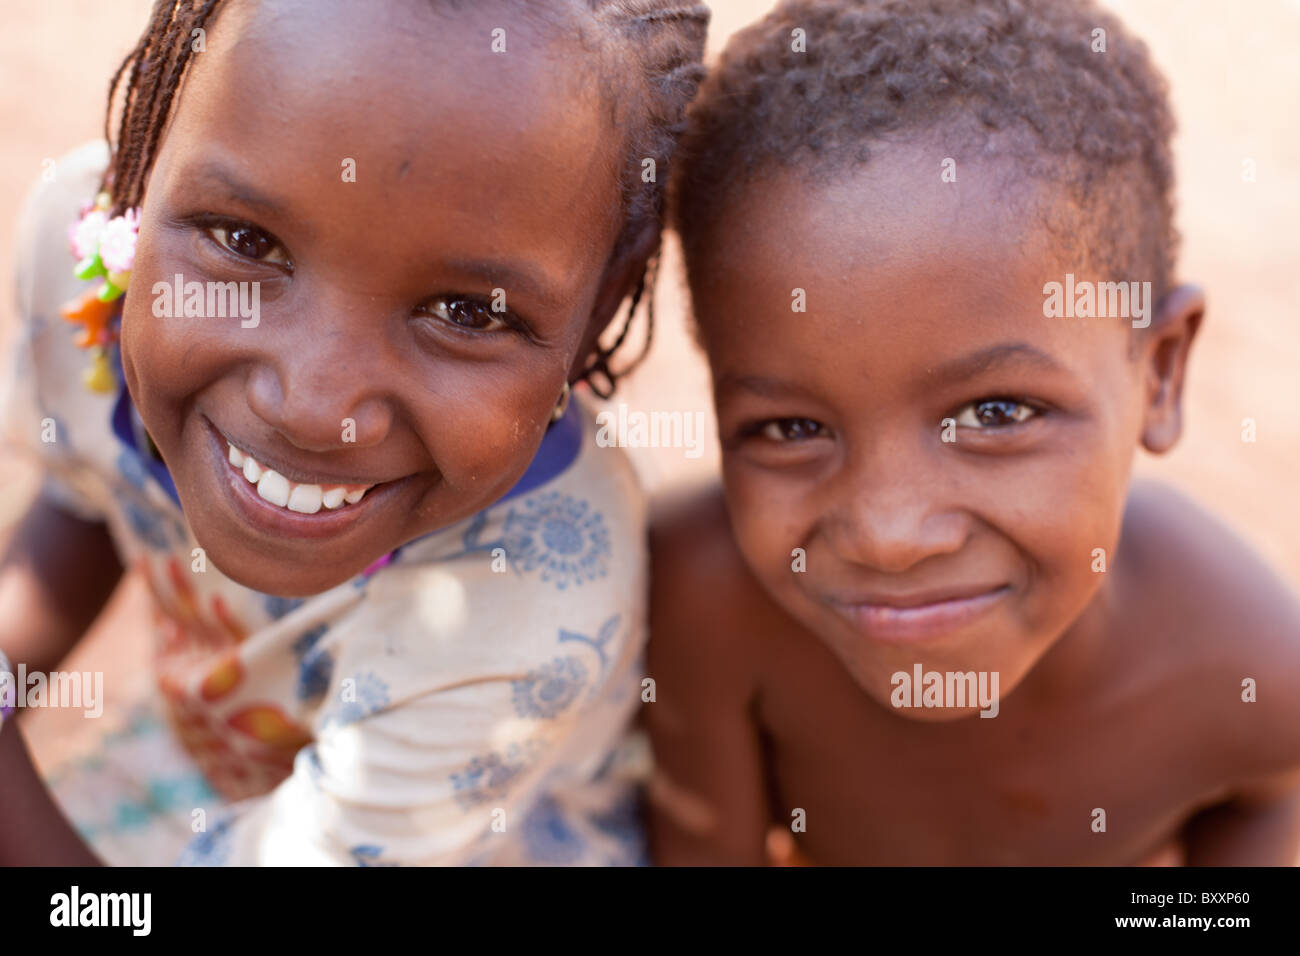 Deux enfants Peuls à Djibo dans le nord du Burkina Faso. Banque D'Images